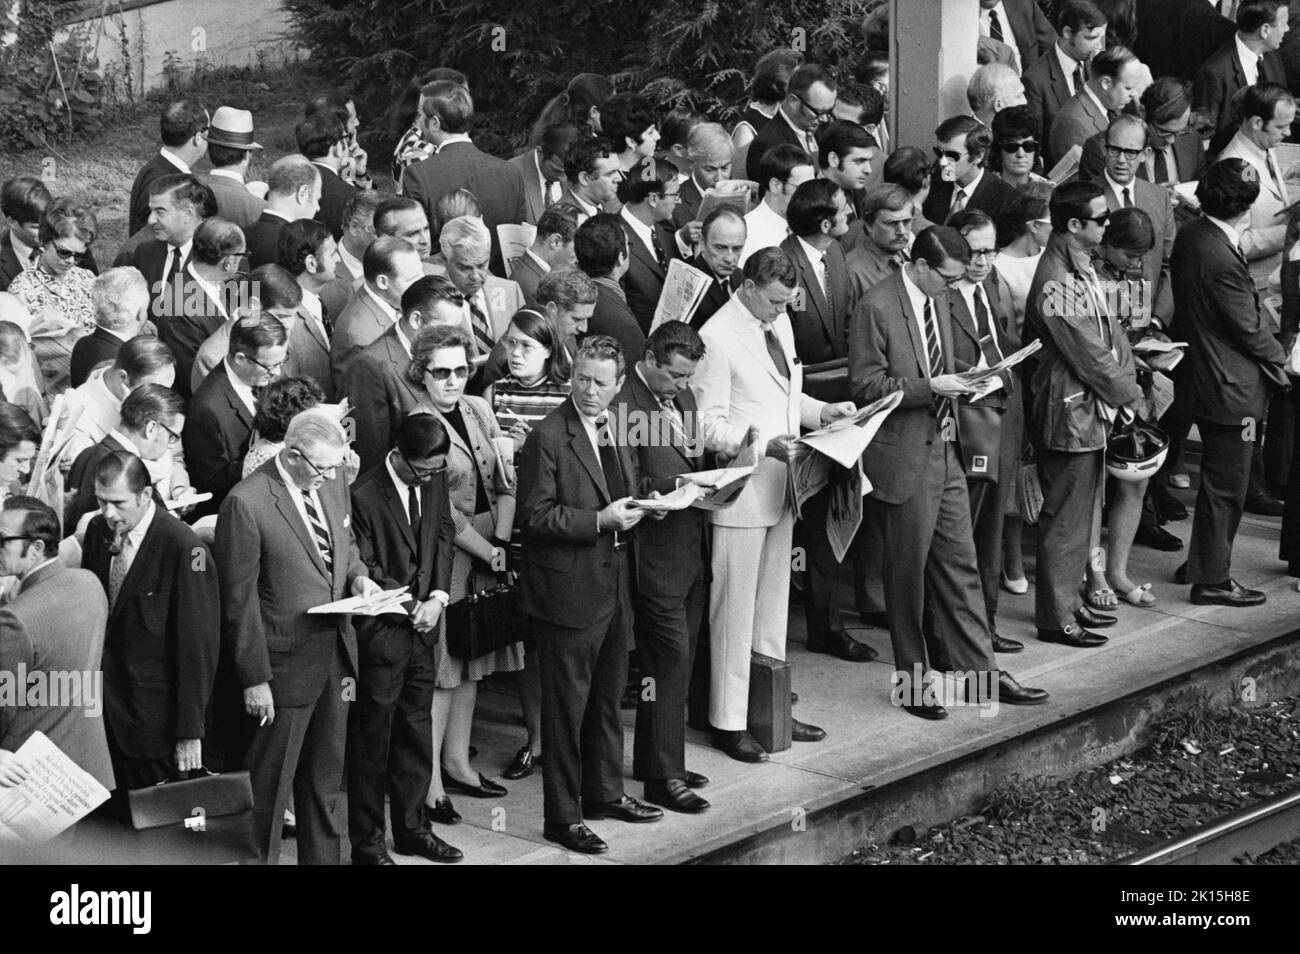 Les navetteurs de chemin de fer de Penn Central attendent sur une plate-forme surpeuplée à Scarsdale, New York, vers 1976.La majorité de la population est blanche et masculine, alors que les femmes représentent environ 1 personnes sur 7 de la main-d'œuvre de navettage illustrée ici. Banque D'Images